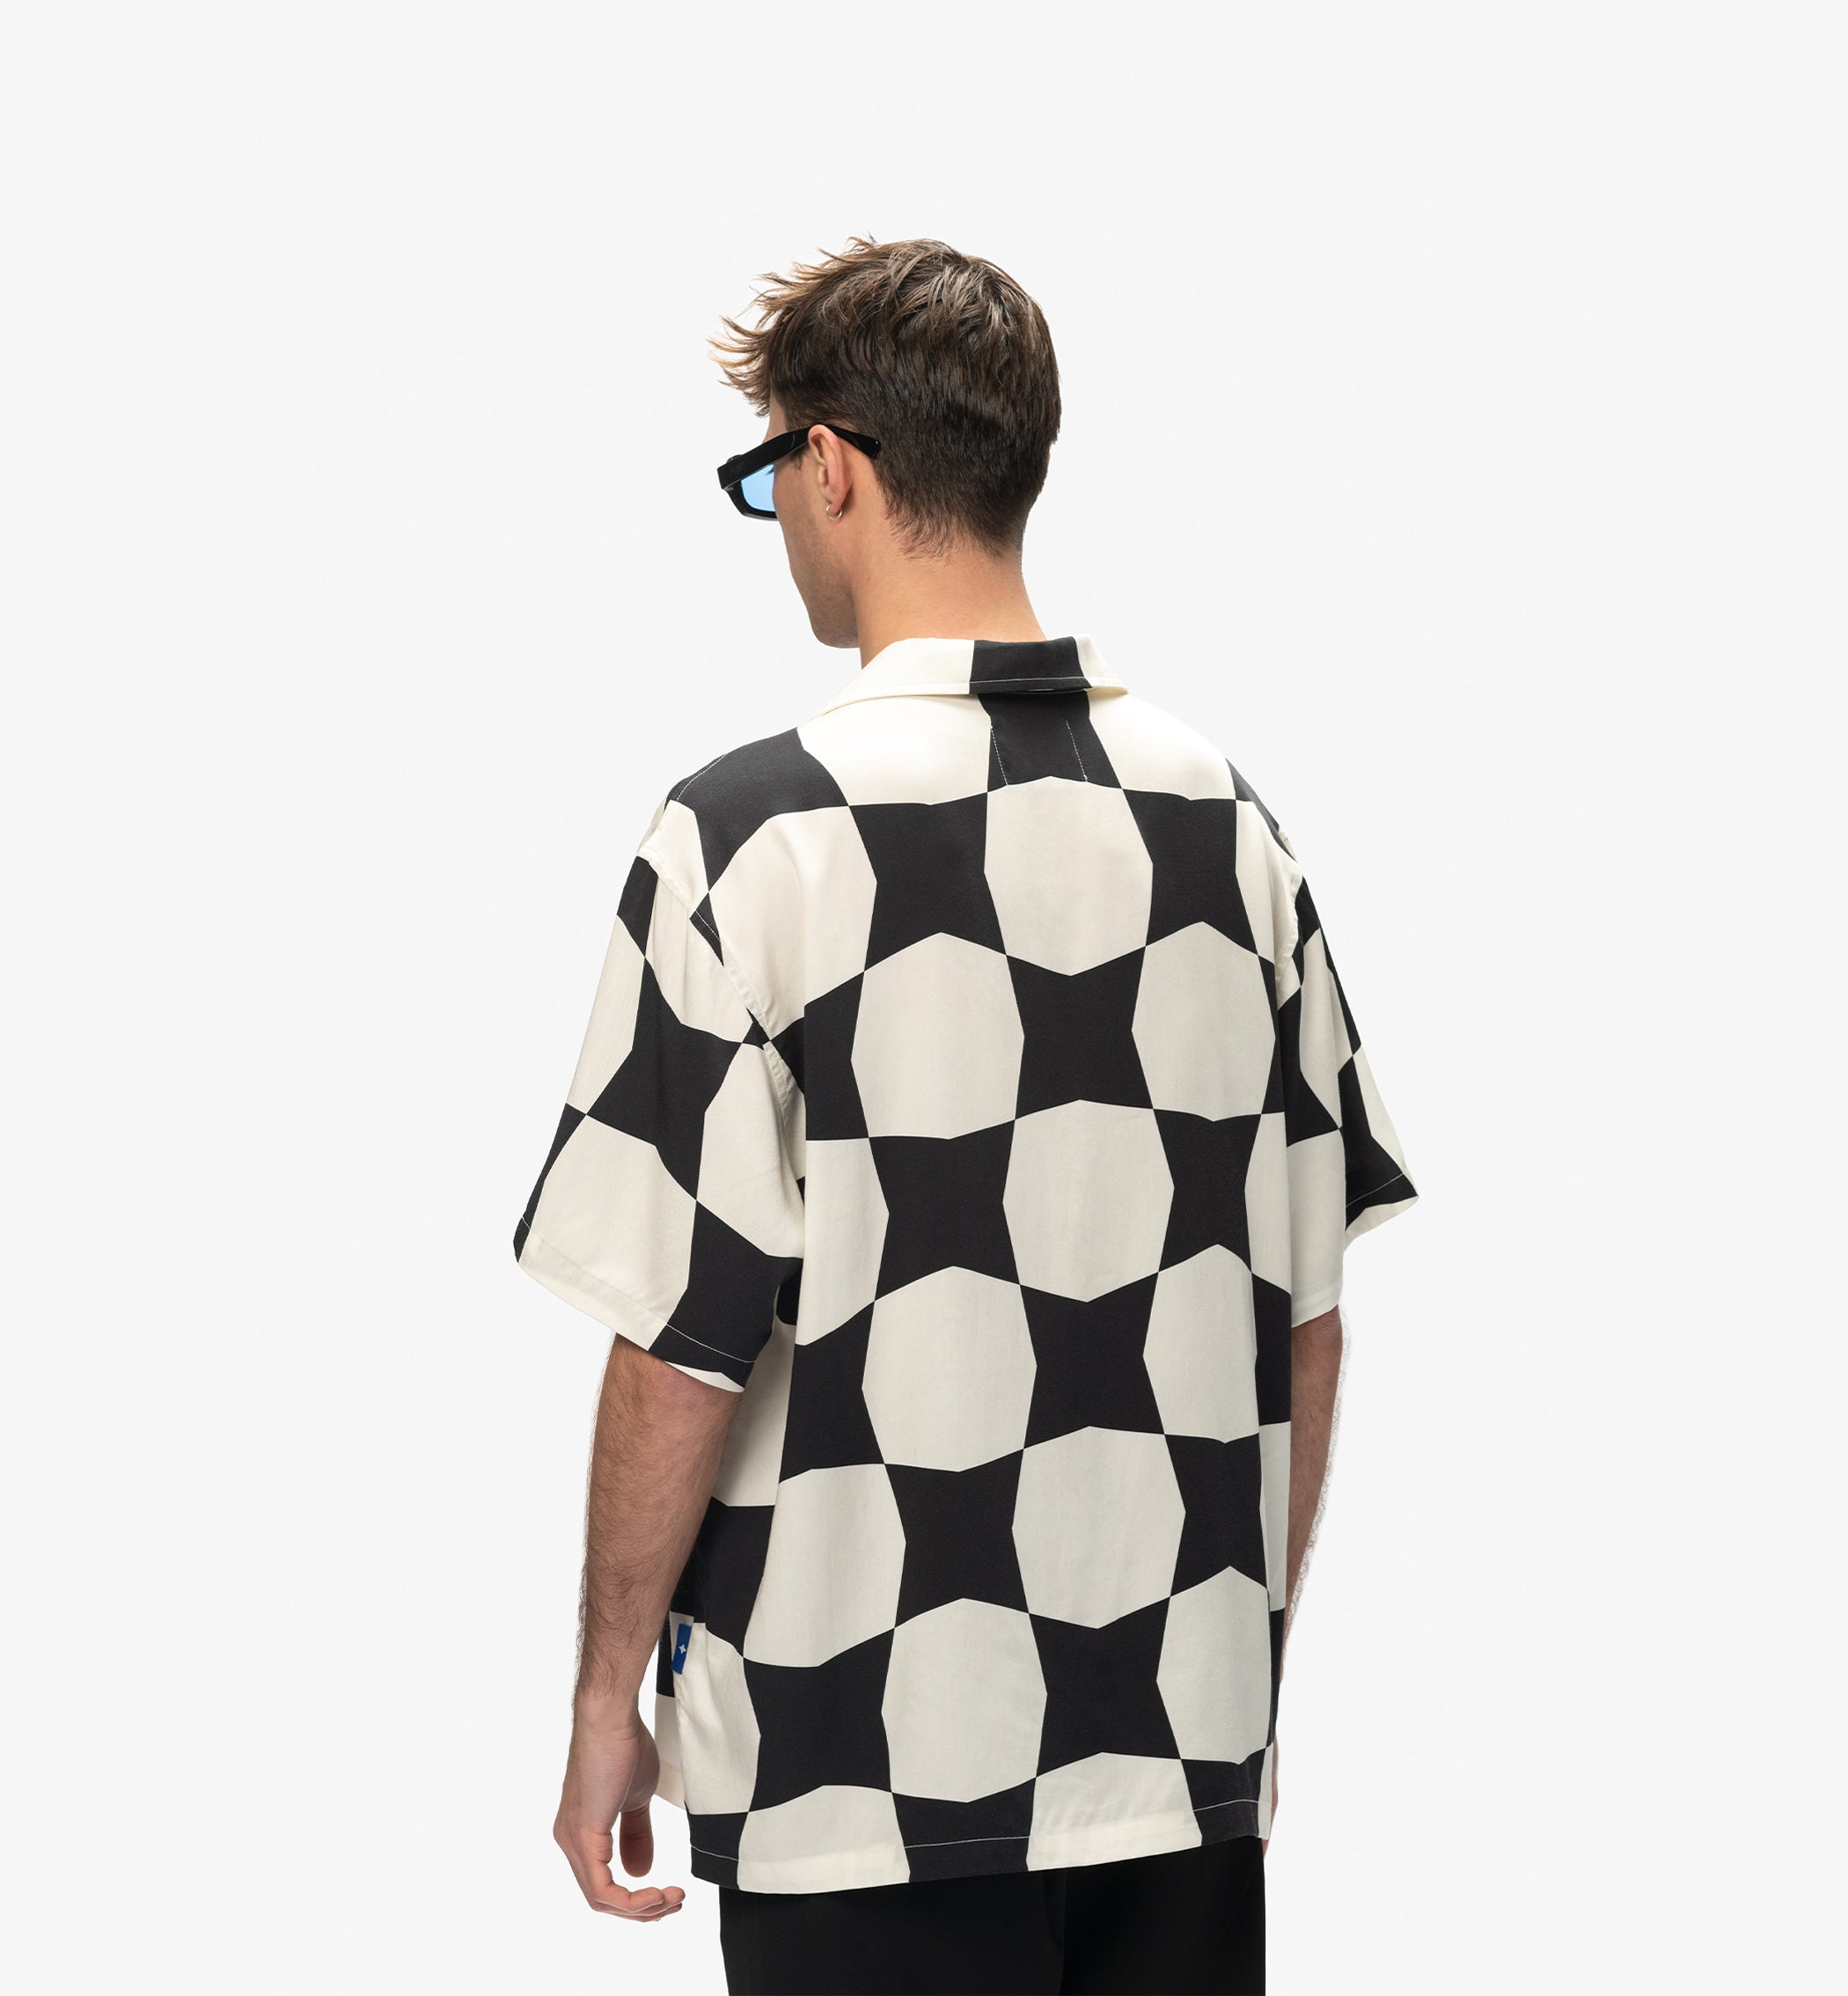 ìlios Checkerboard Summer Shirt